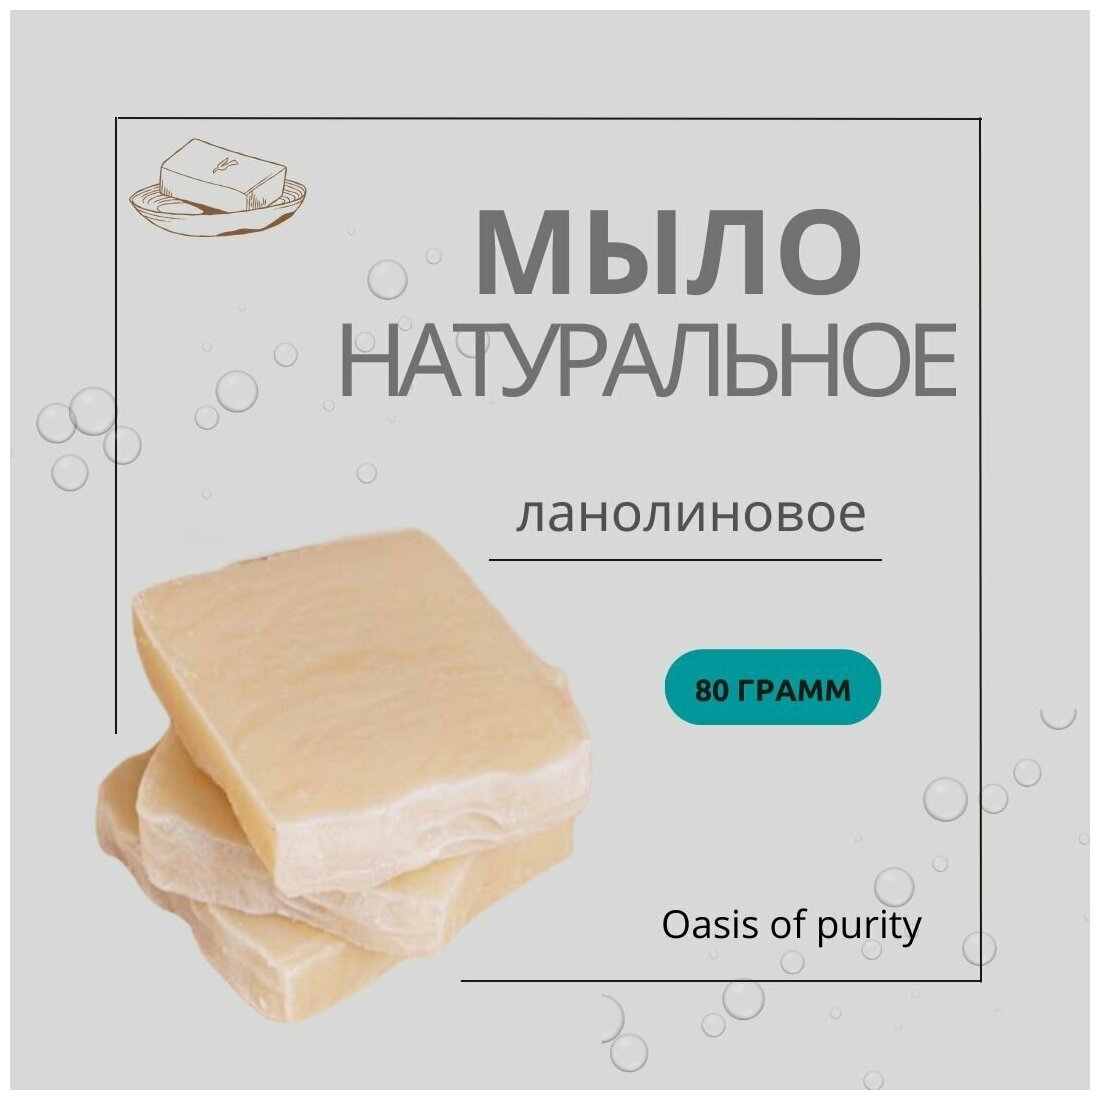 Натуральное твердое мыло ручной работы Oasis of purity с ланолином / гипоаллергенное ланолиновое / 80 грамм